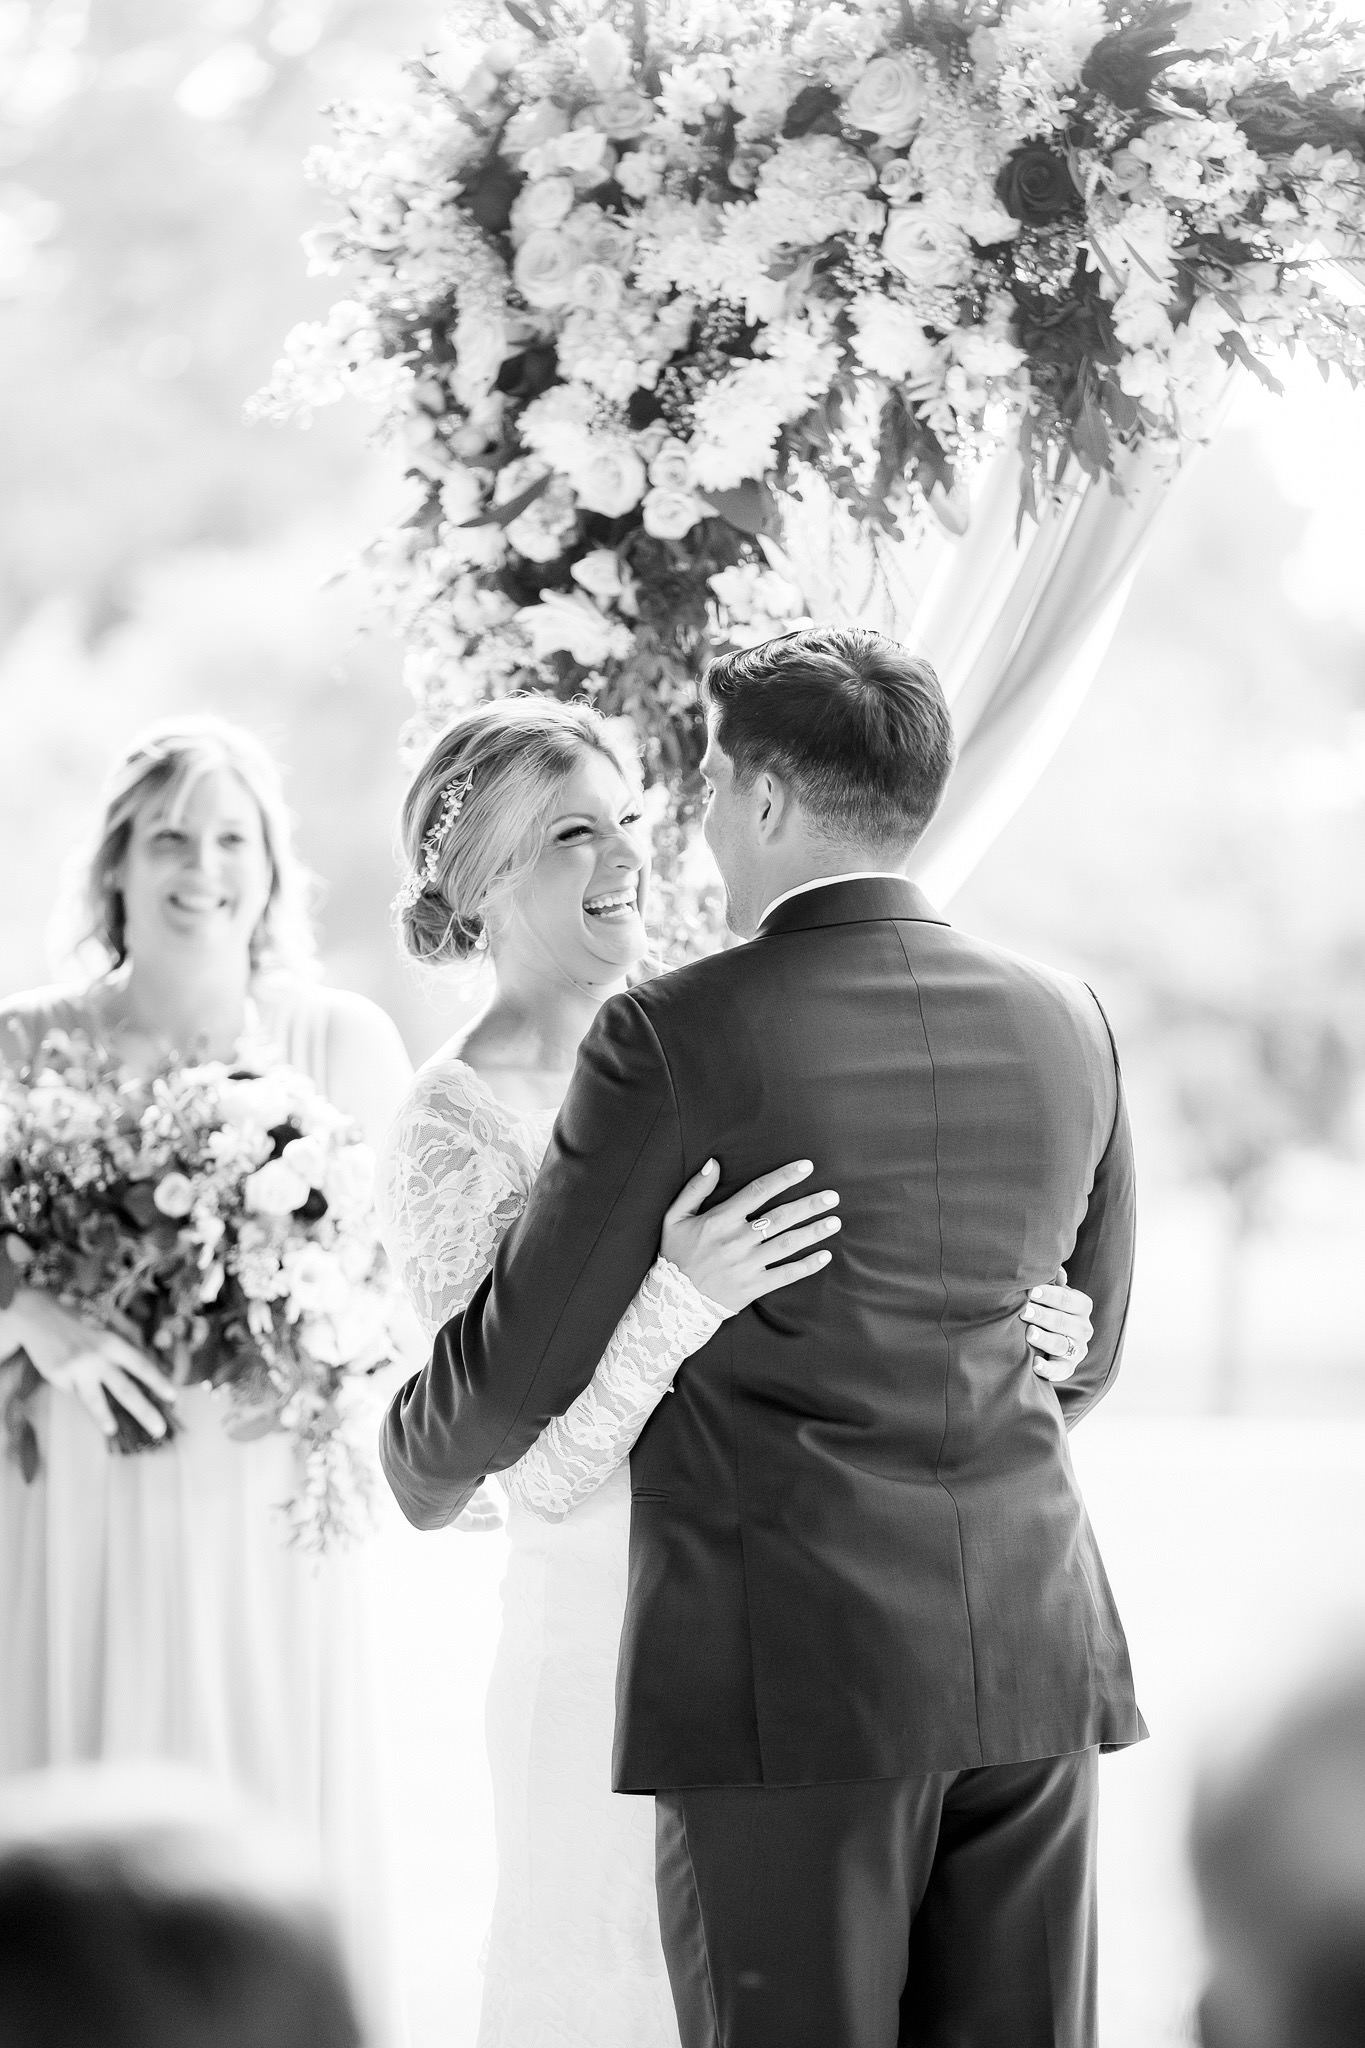 A Wedding at Brackenridge Golf Course by Dawn Elizabeth Studios, San Antonio Wedding Photographer